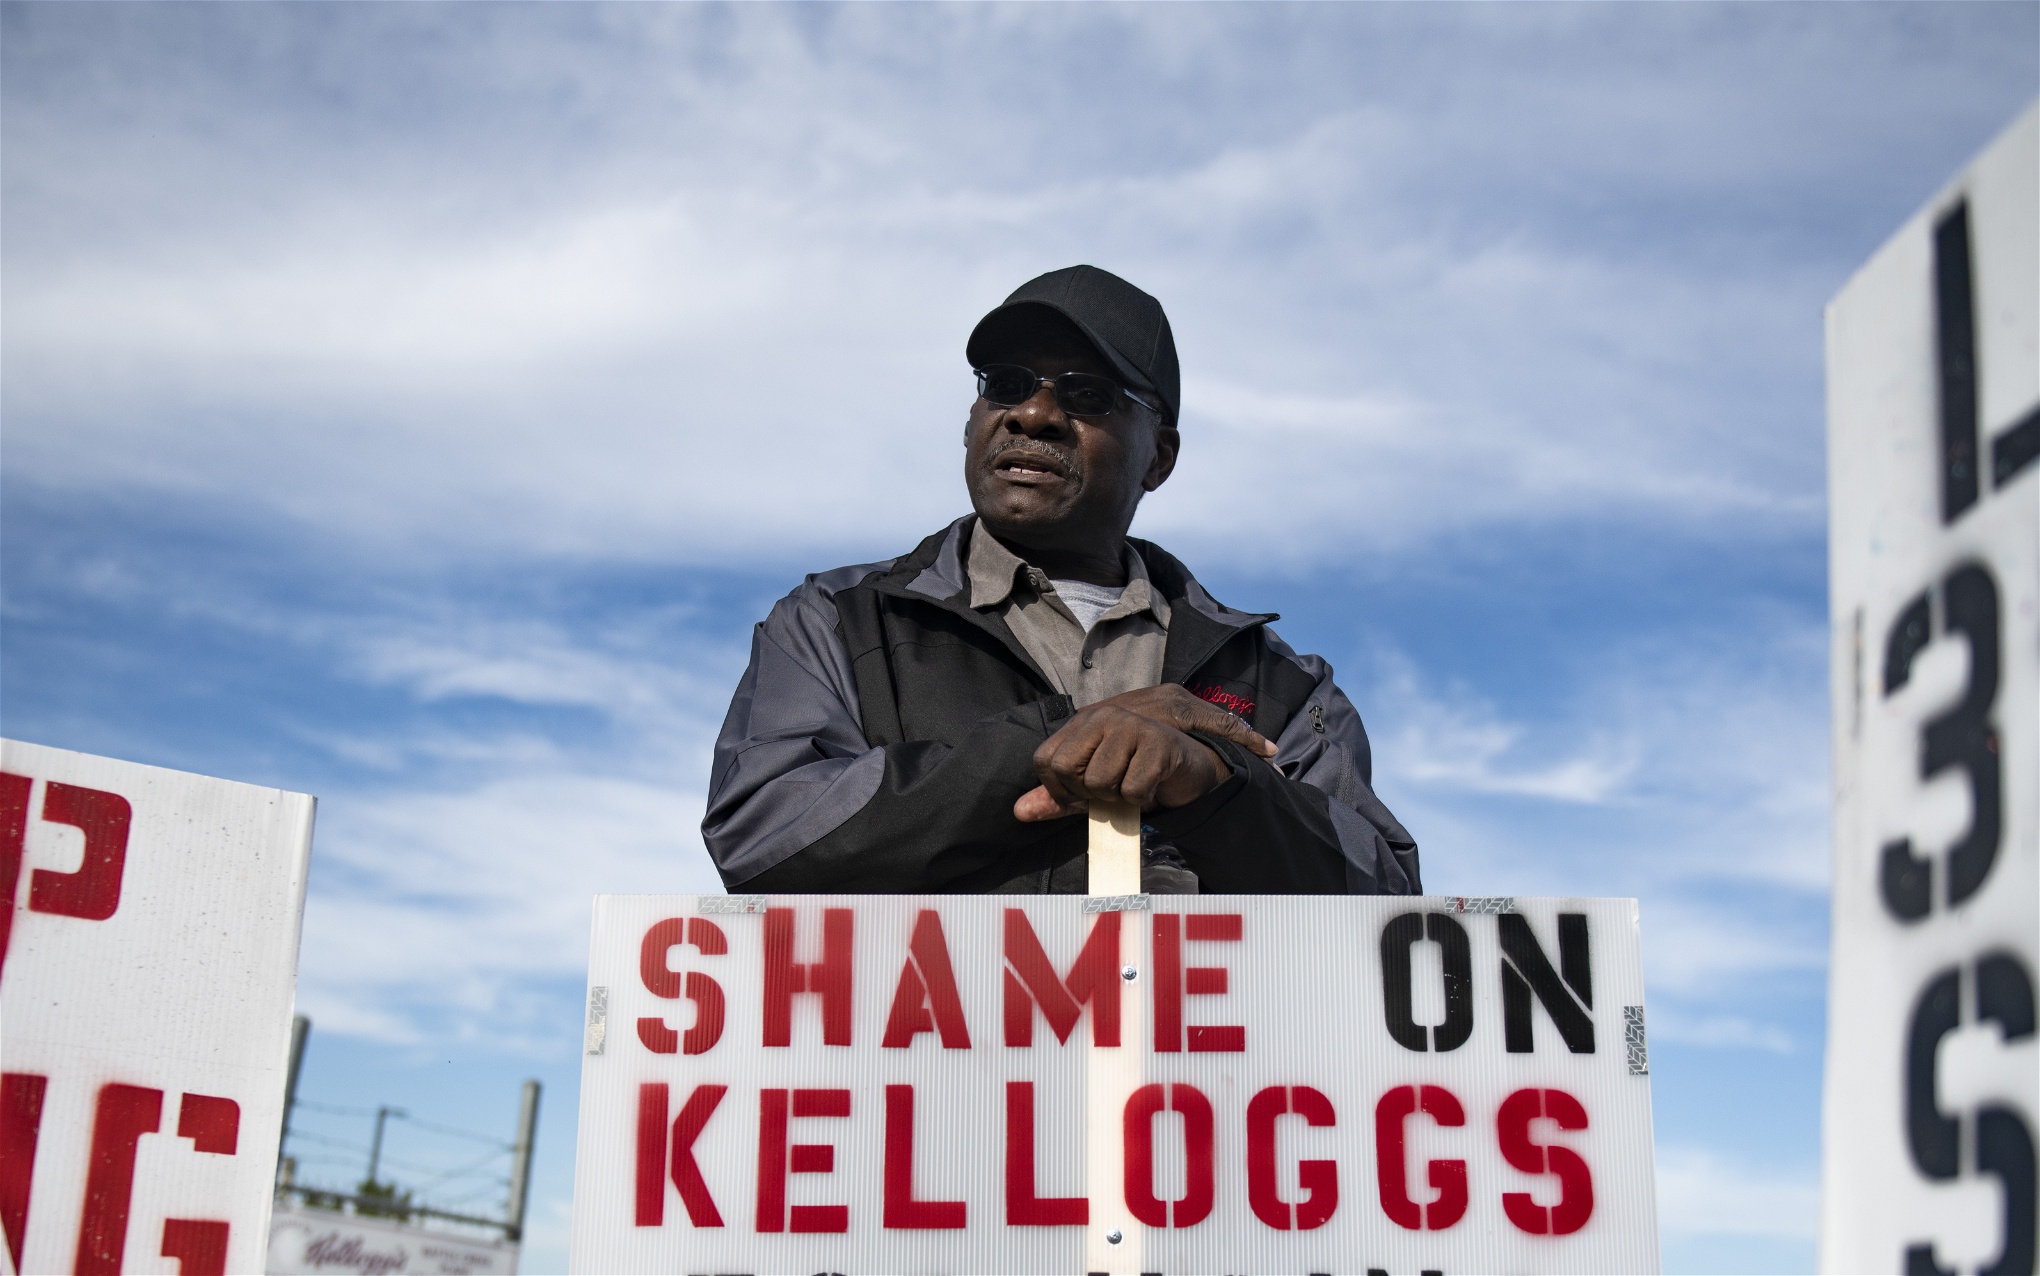  1 400 arbetare på livsmedelstillverkaren Kelloggs har strejkat sedan den 5 oktober. Foto: Nicole Hester/ TT